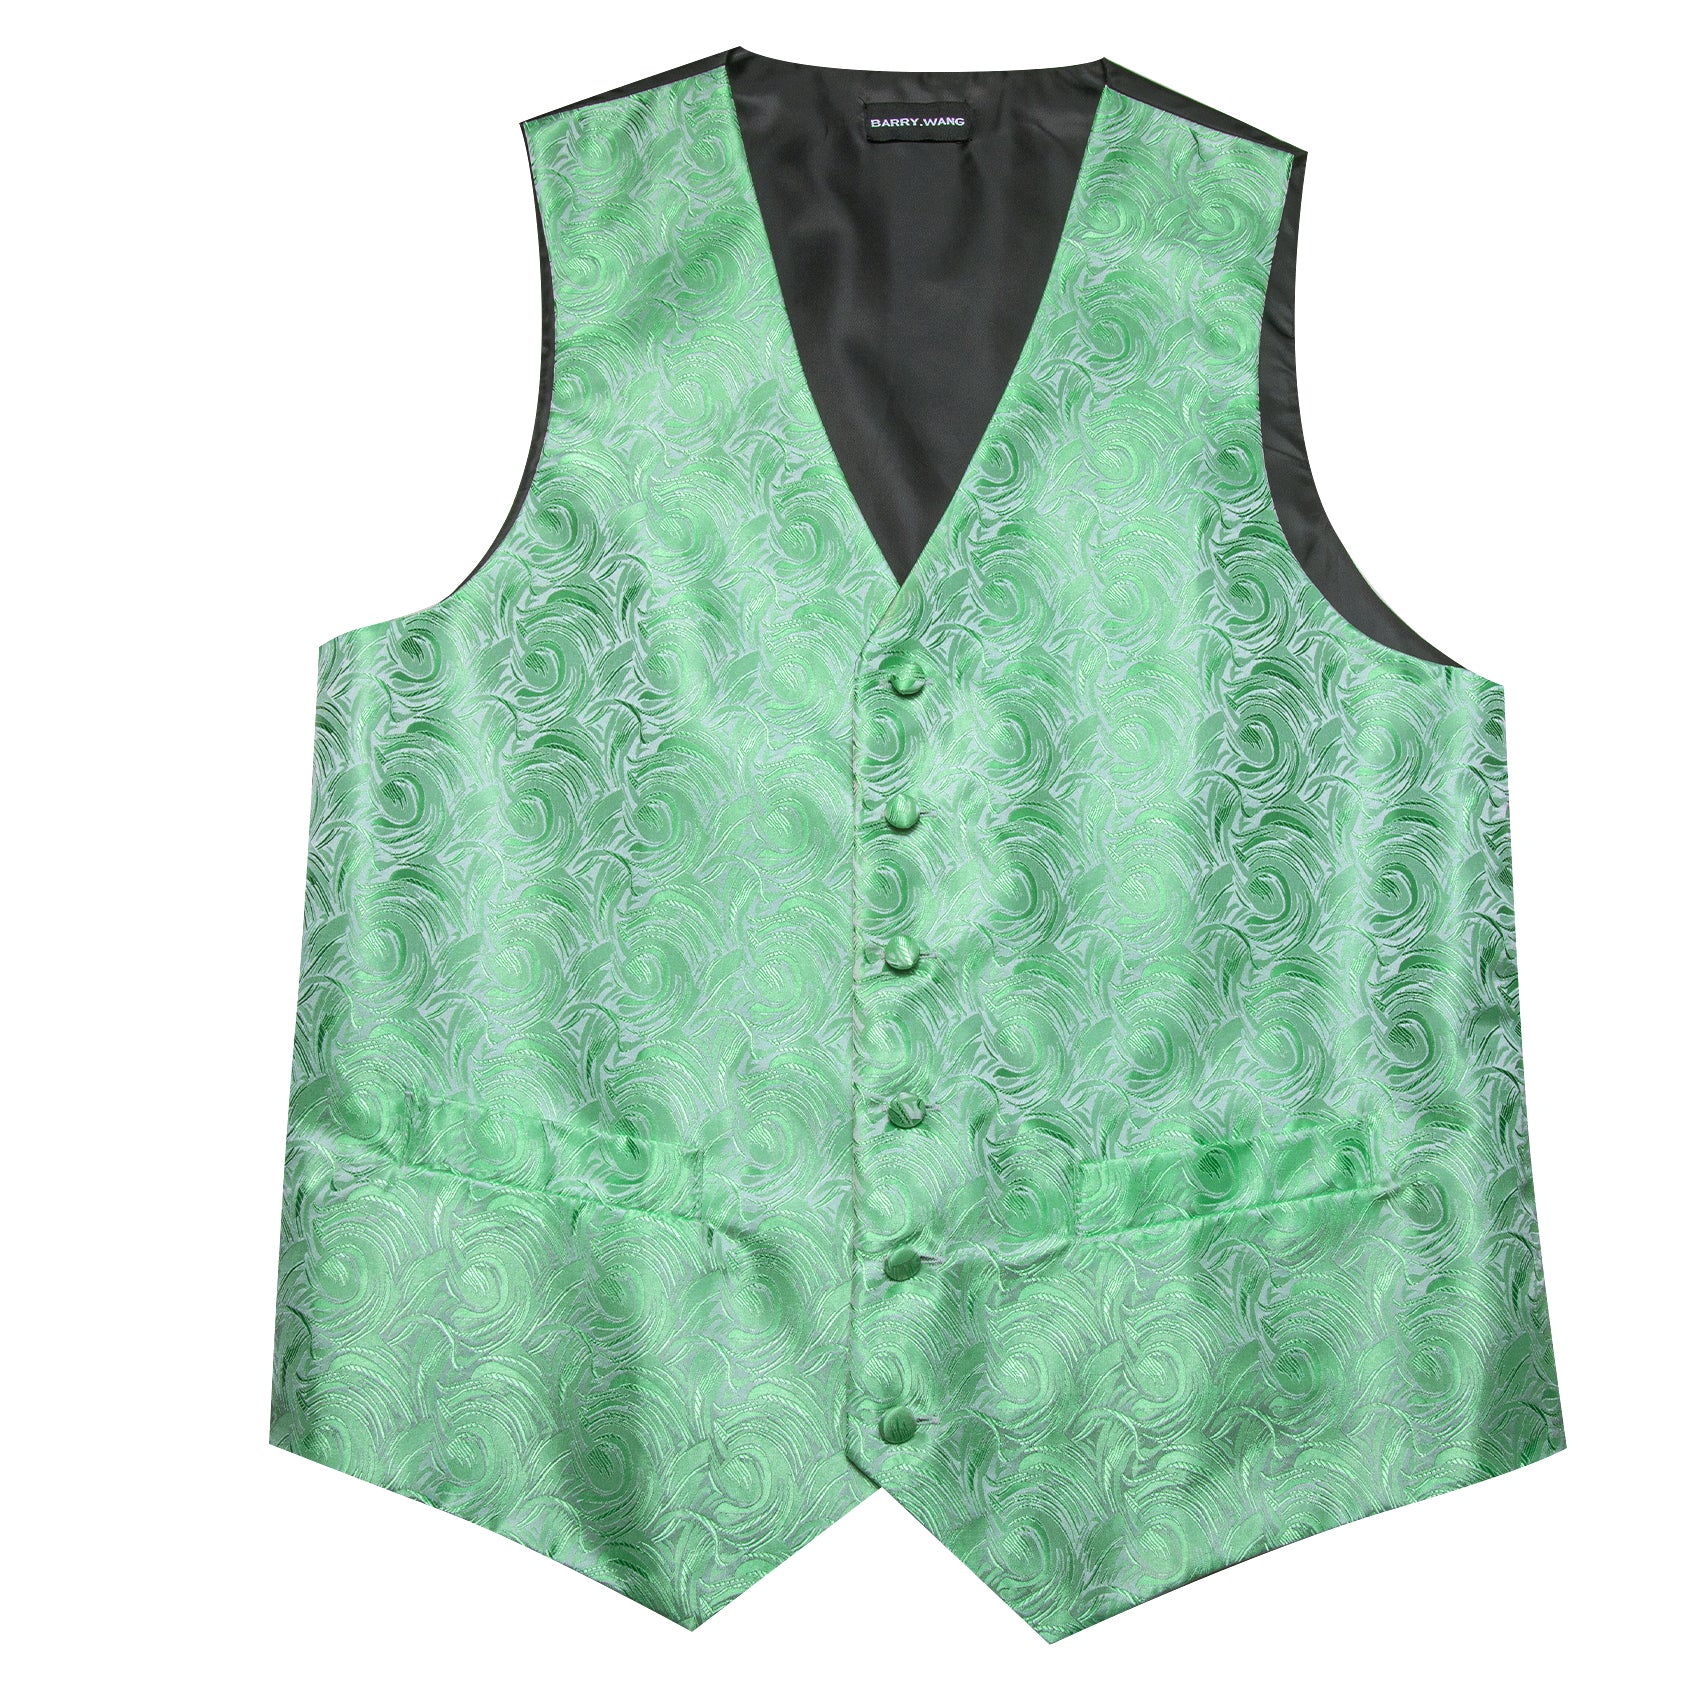 Men's Turquoise Green Floral Silk Tie Waistcoat Vest Hanky Cufflinks Set